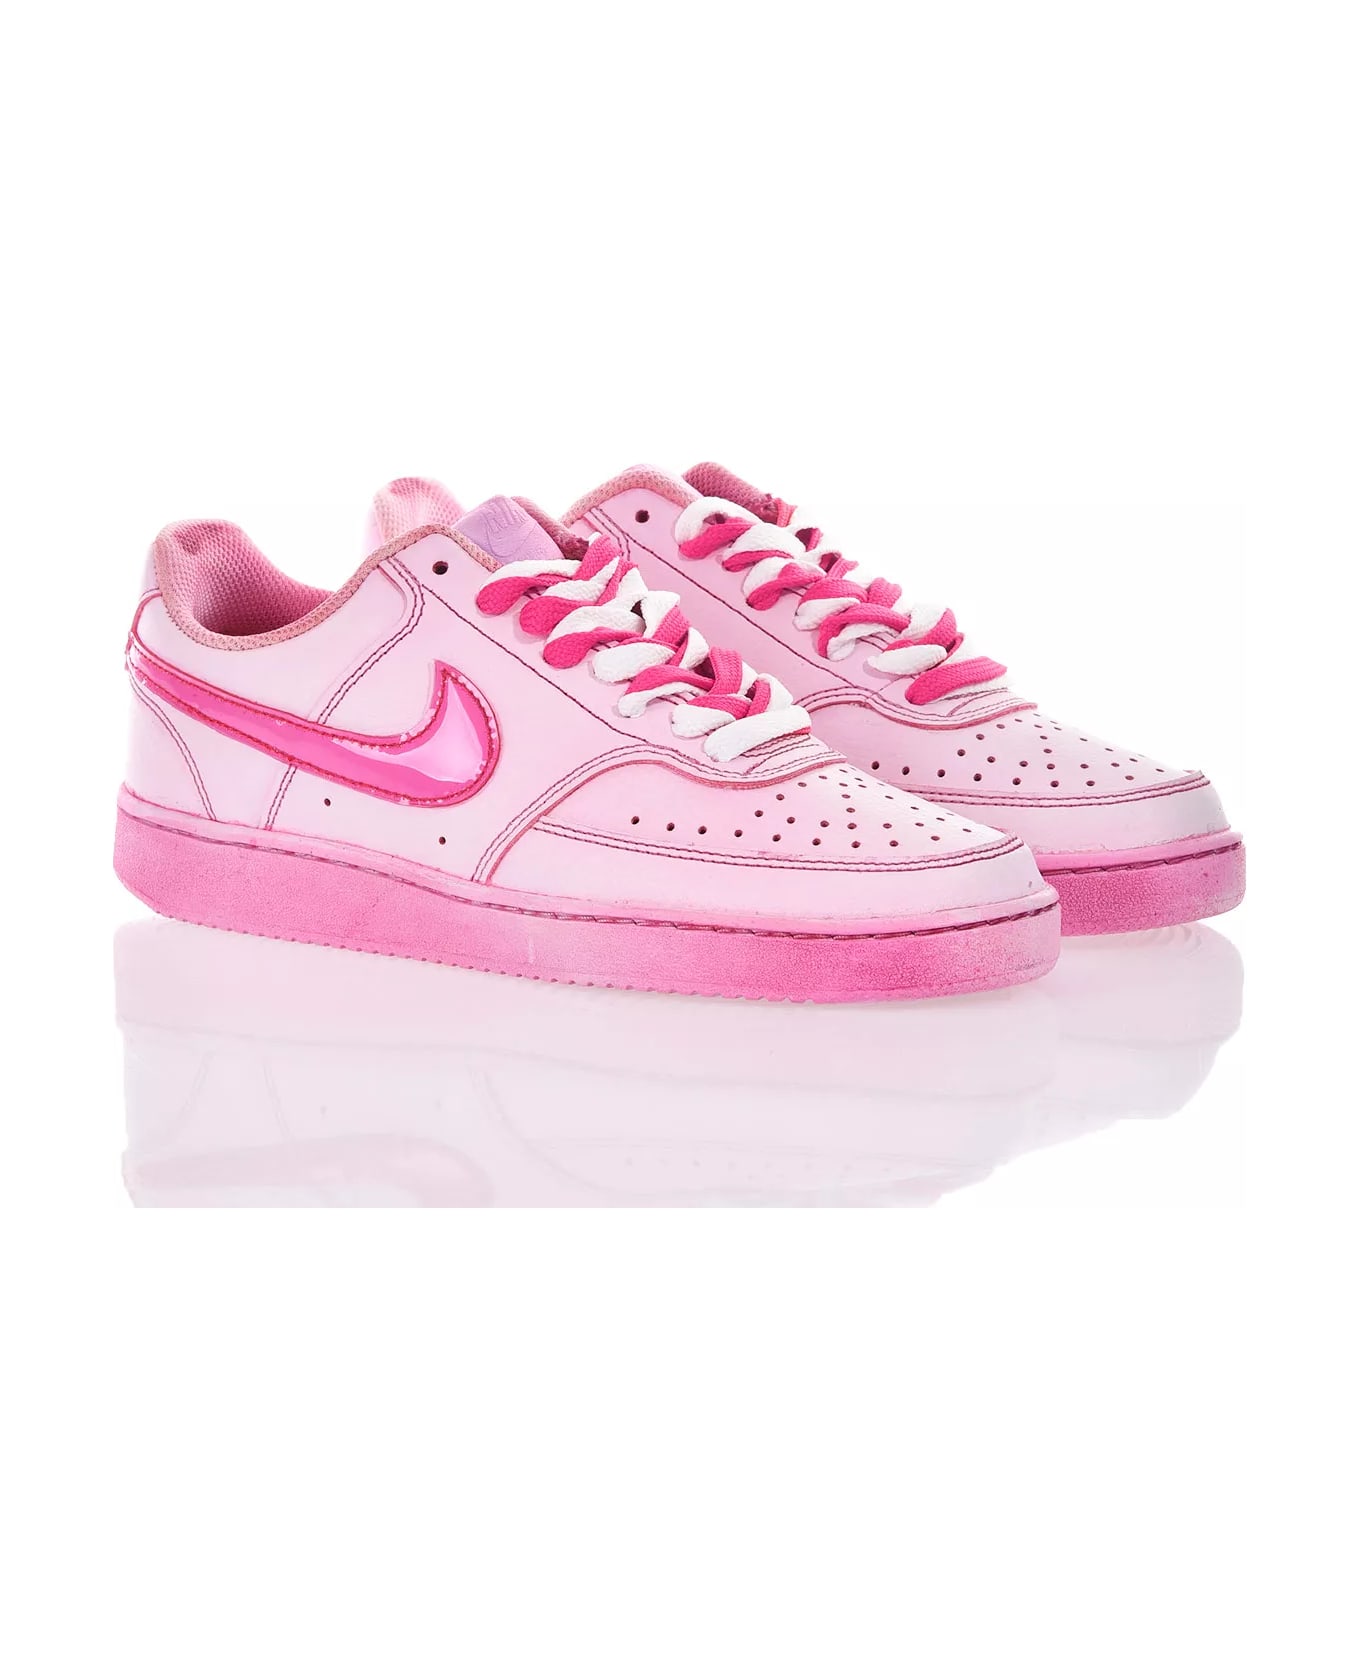 Mimanera Nike Pink Shoes: Mimanerashop.com スニーカー